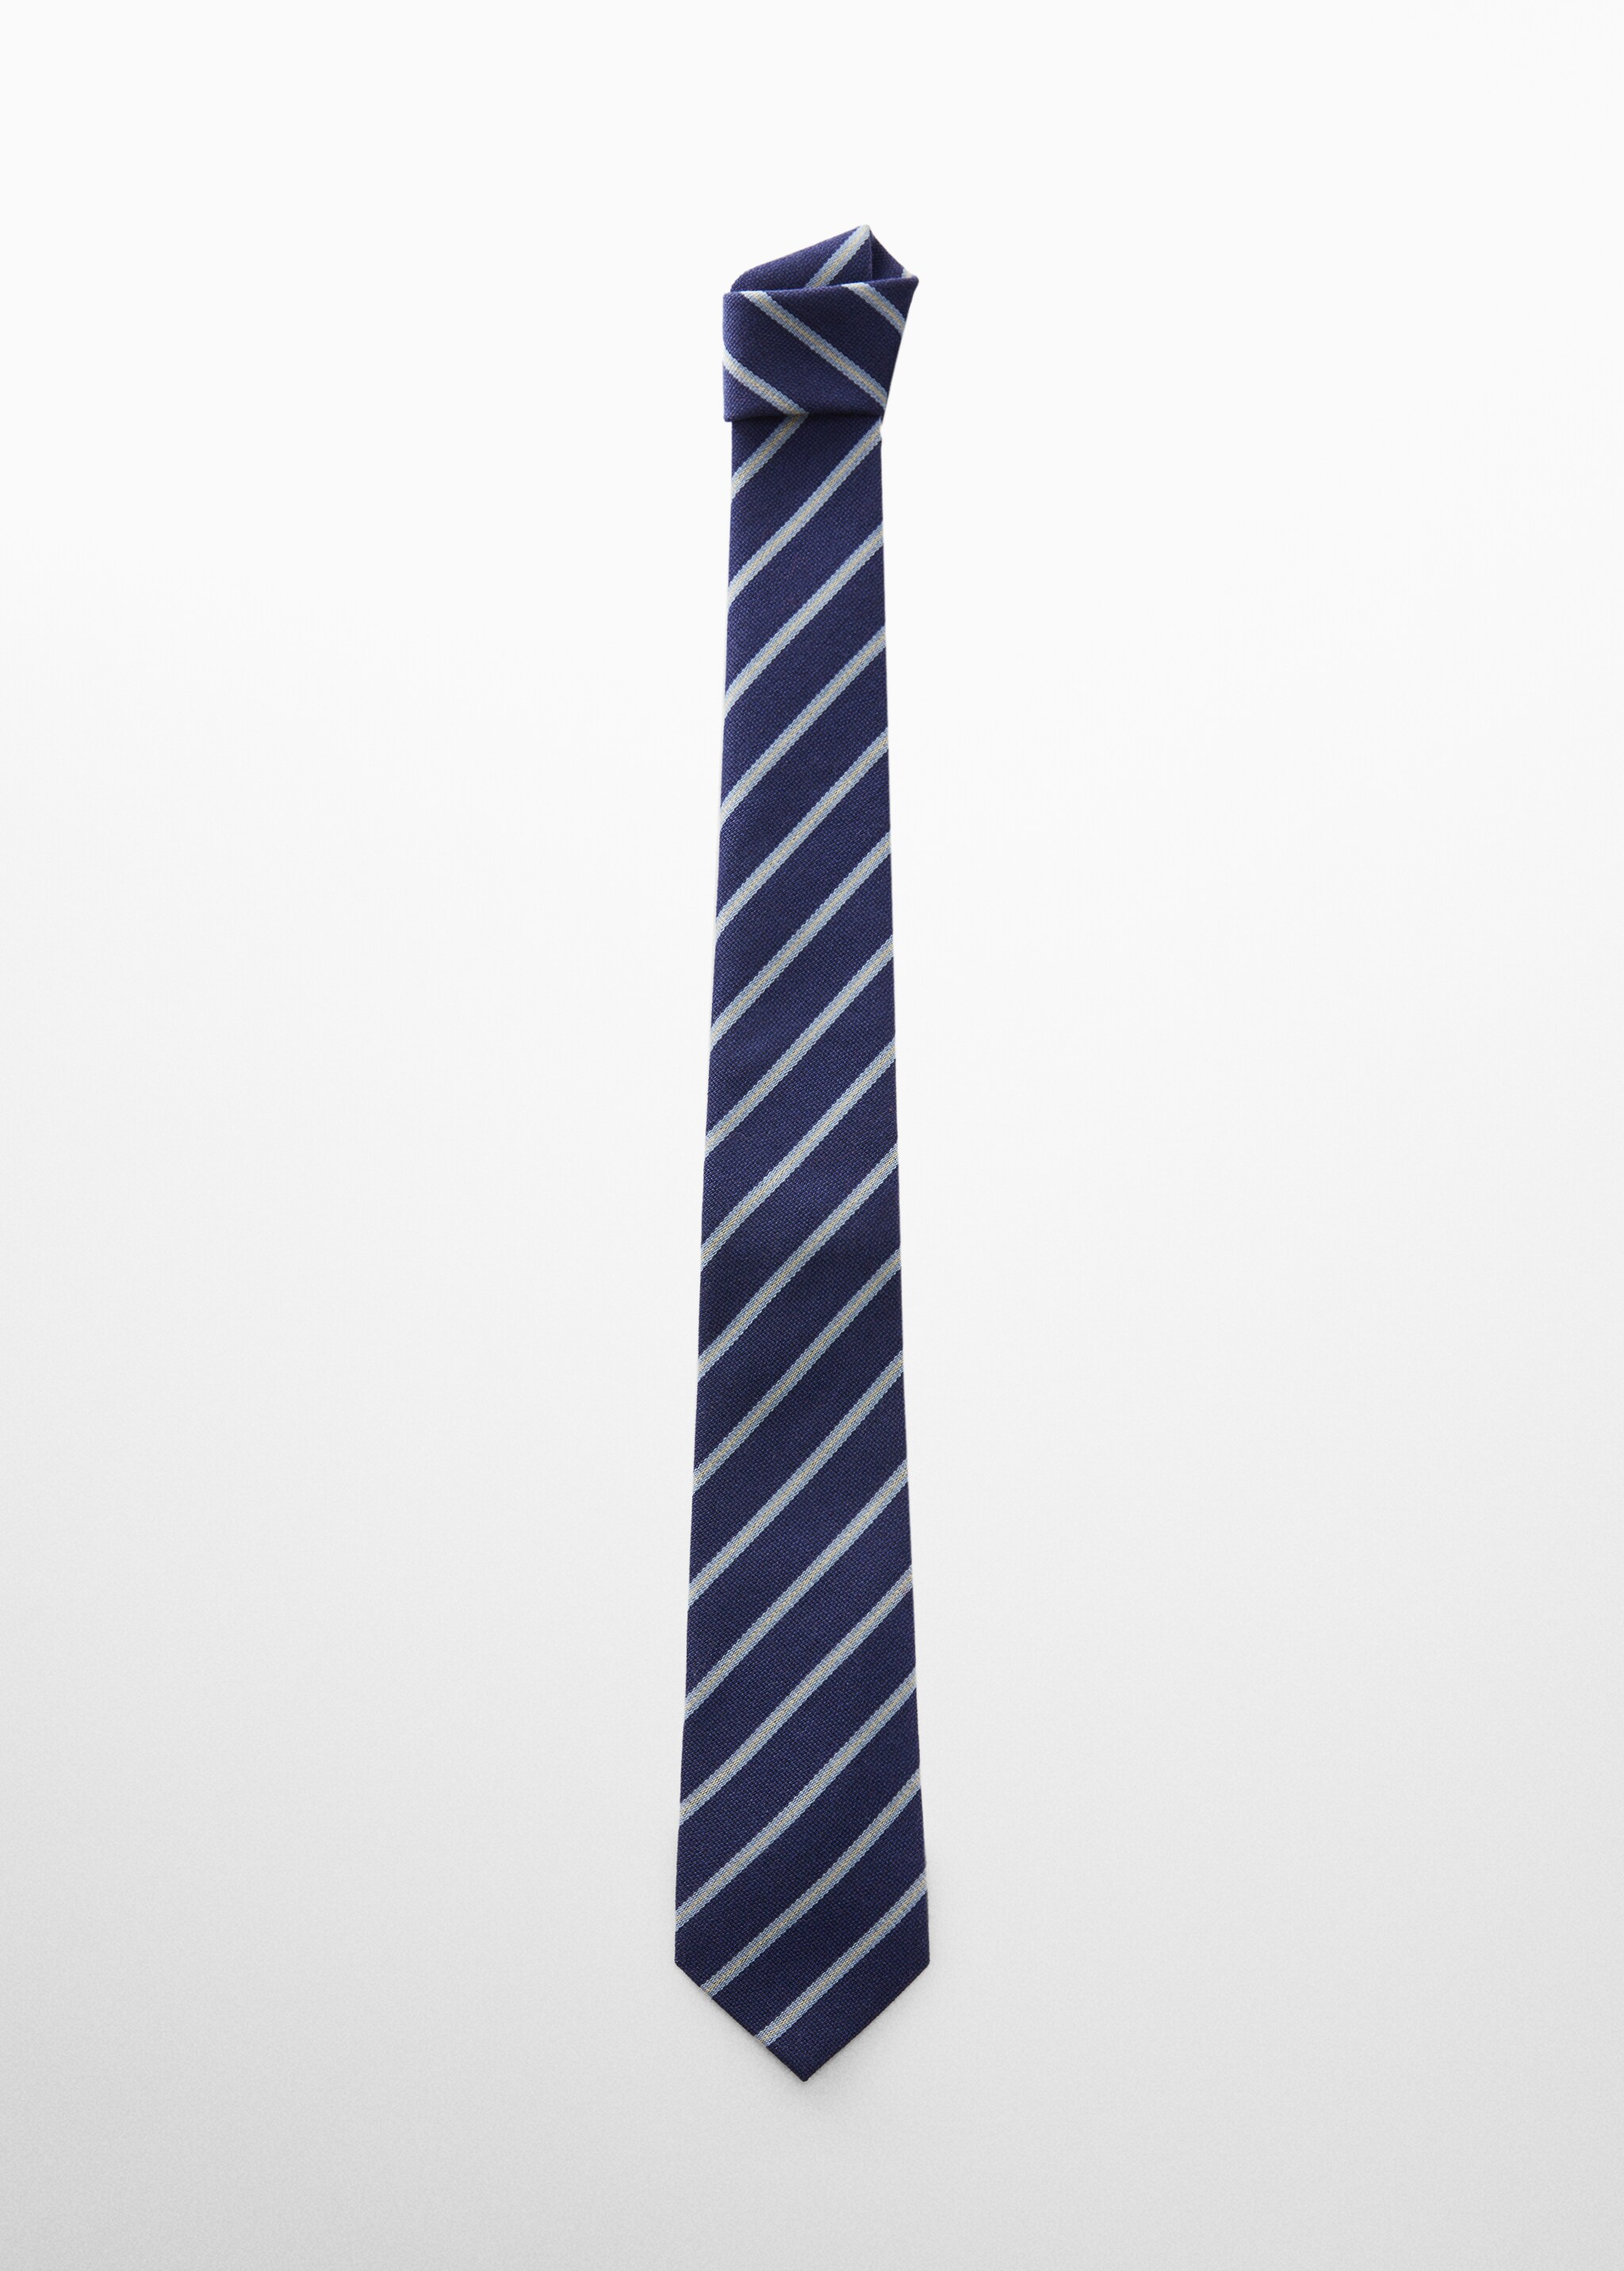 Cravate rayures laine mélangée - Article sans modèle